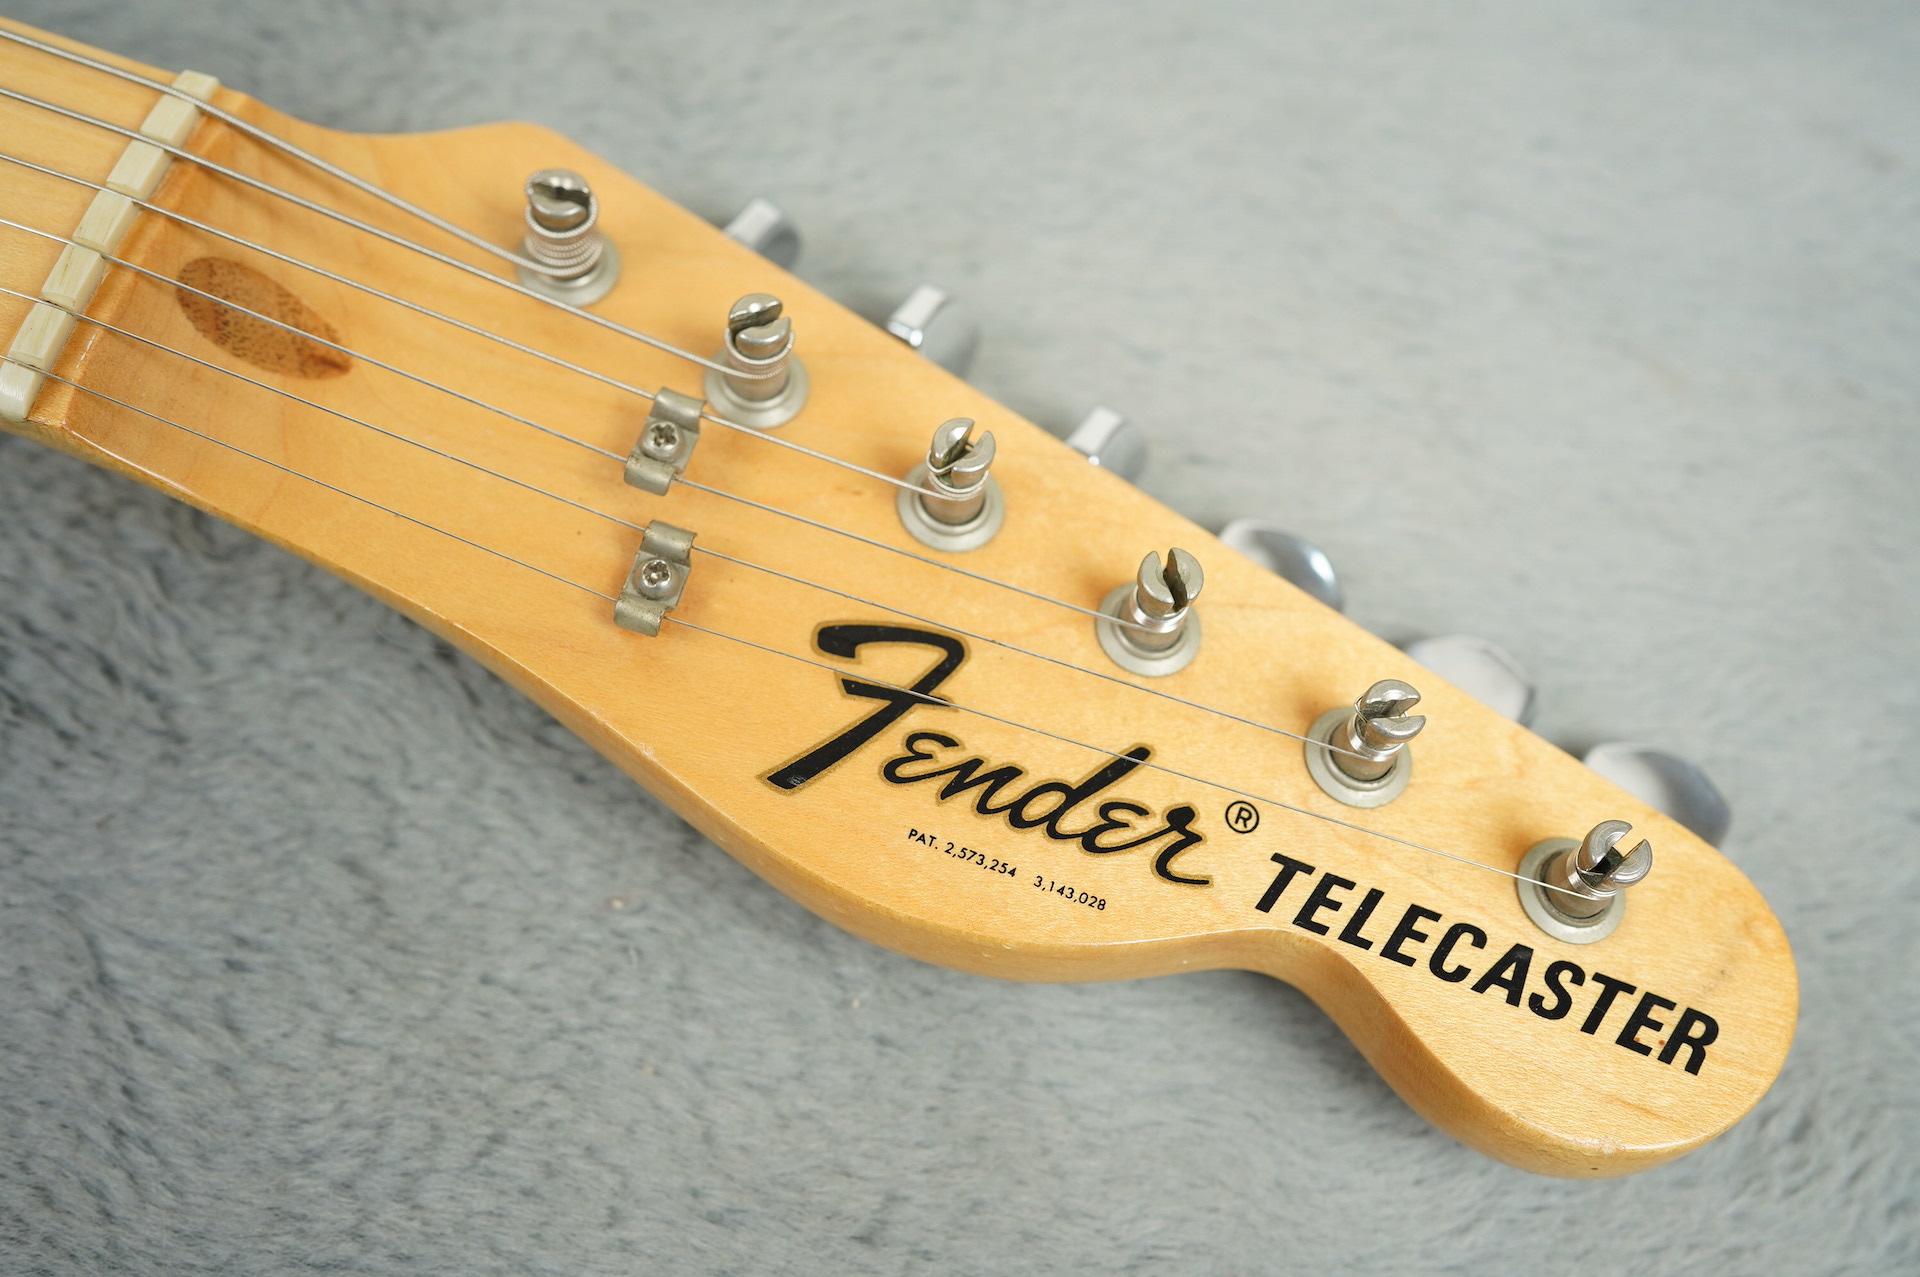 1973 Fender Telecaster Blonde near MINT